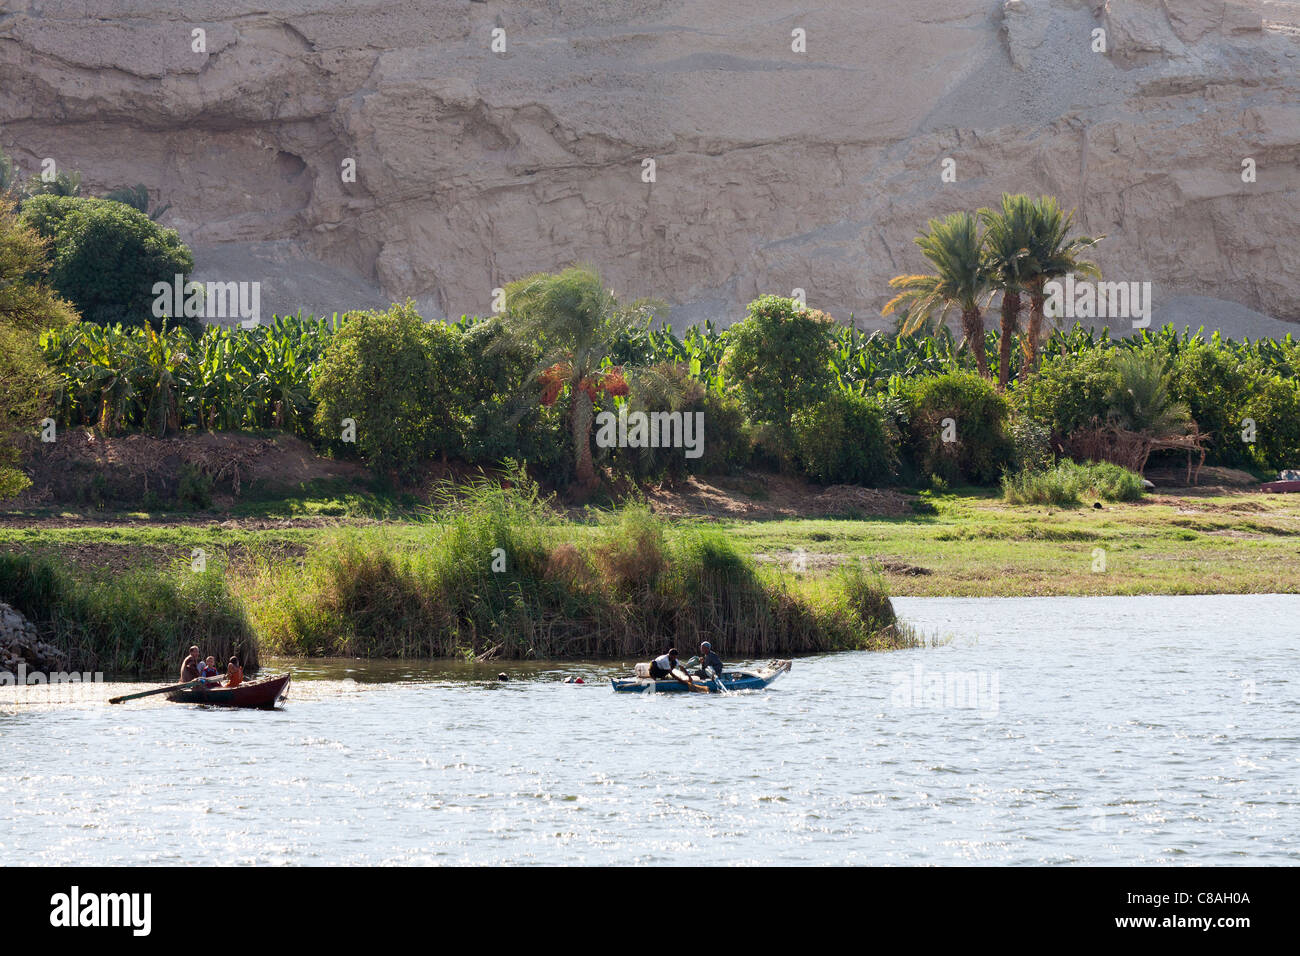 La sezione di lussureggiante verde fiume Nilo bank contro uno sfondo di roccia con due piccole barche da pesca sul fiume di fronte, Egitto Foto Stock